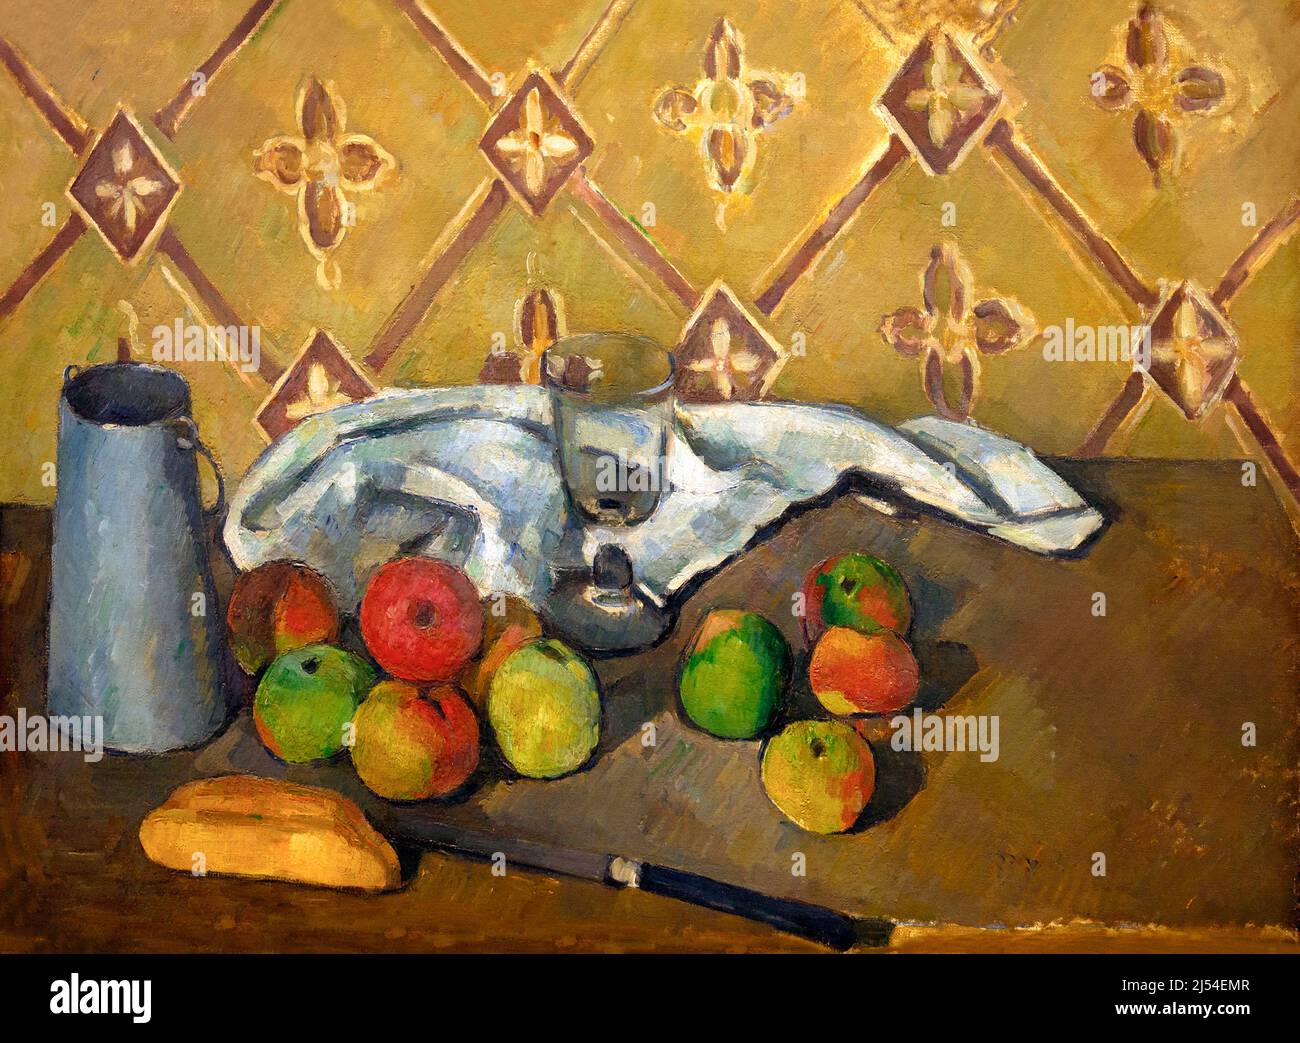 Fruit, Napkin and Jug Of Milk, Fruits, serviette et boite a lait, Paul Cezanne, 1880-81, Musee de L'Orangerie, Paris, France, Europe Stock Photo